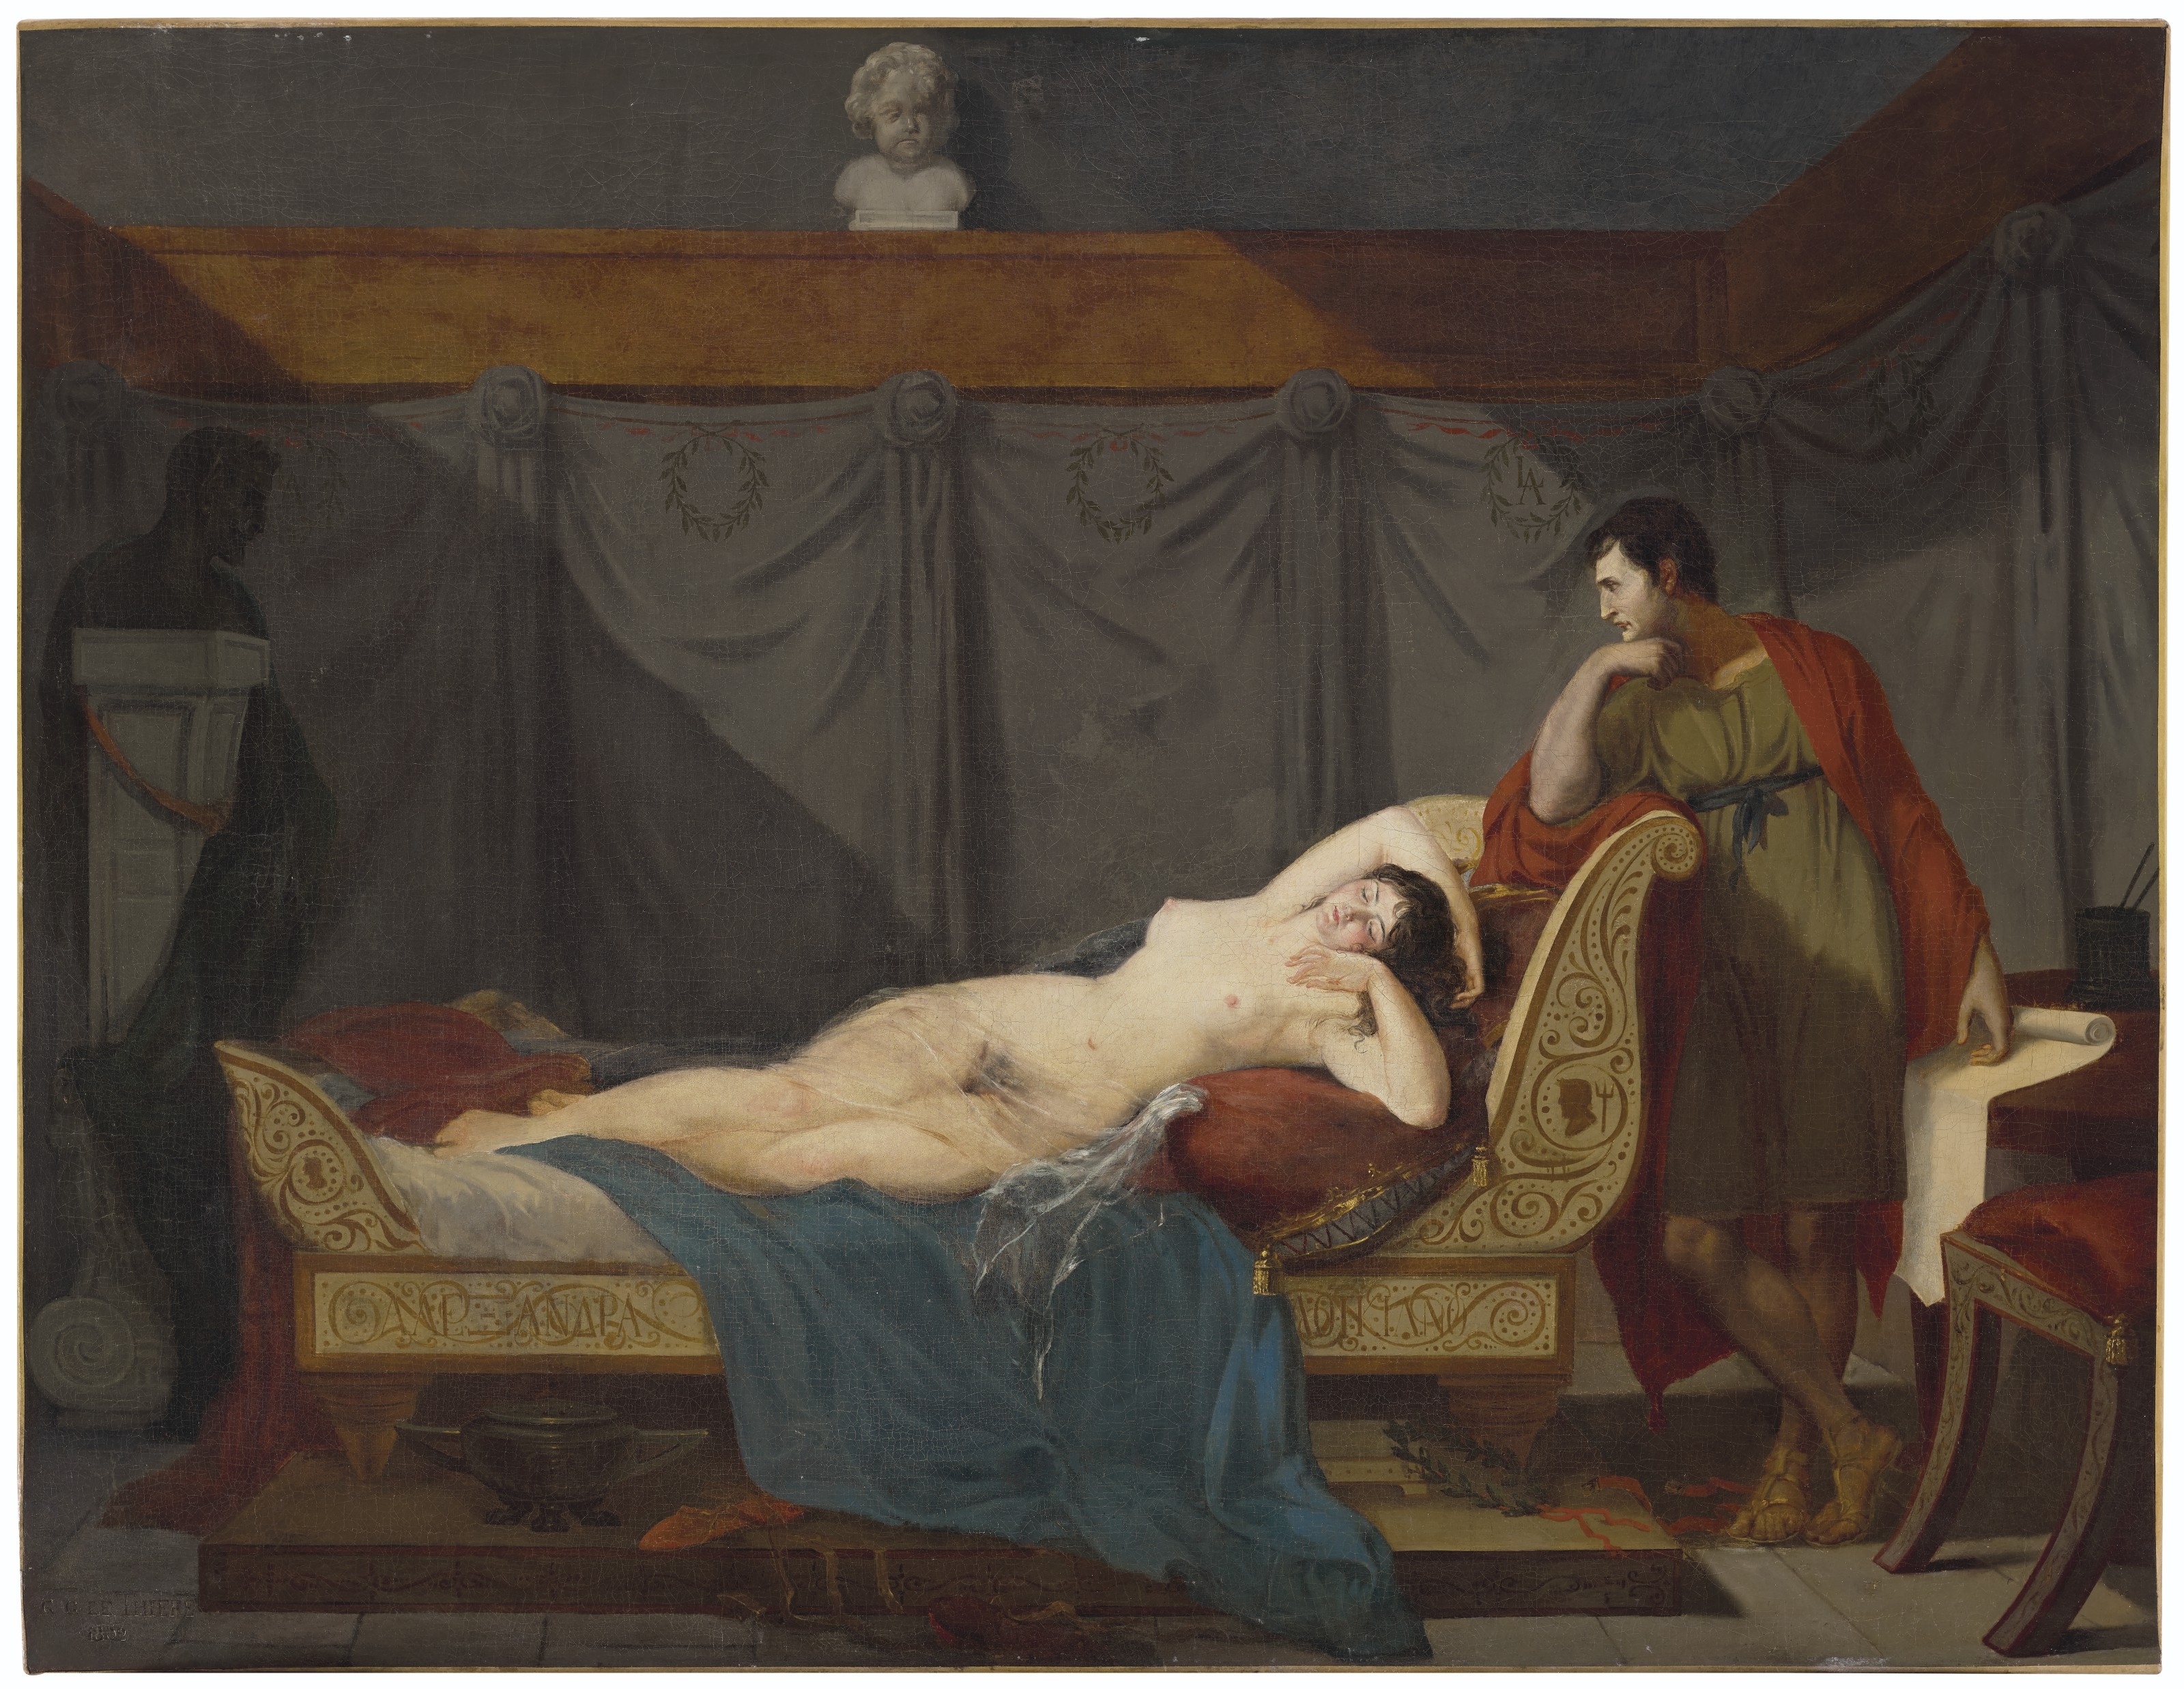 Artwork by Guillaume Guillon-Lethière, Lucien Bonaparte, in antique dress, contemplating his mistress, Alexandrine de Bleschamp Jouberton, Made of oil on canvas